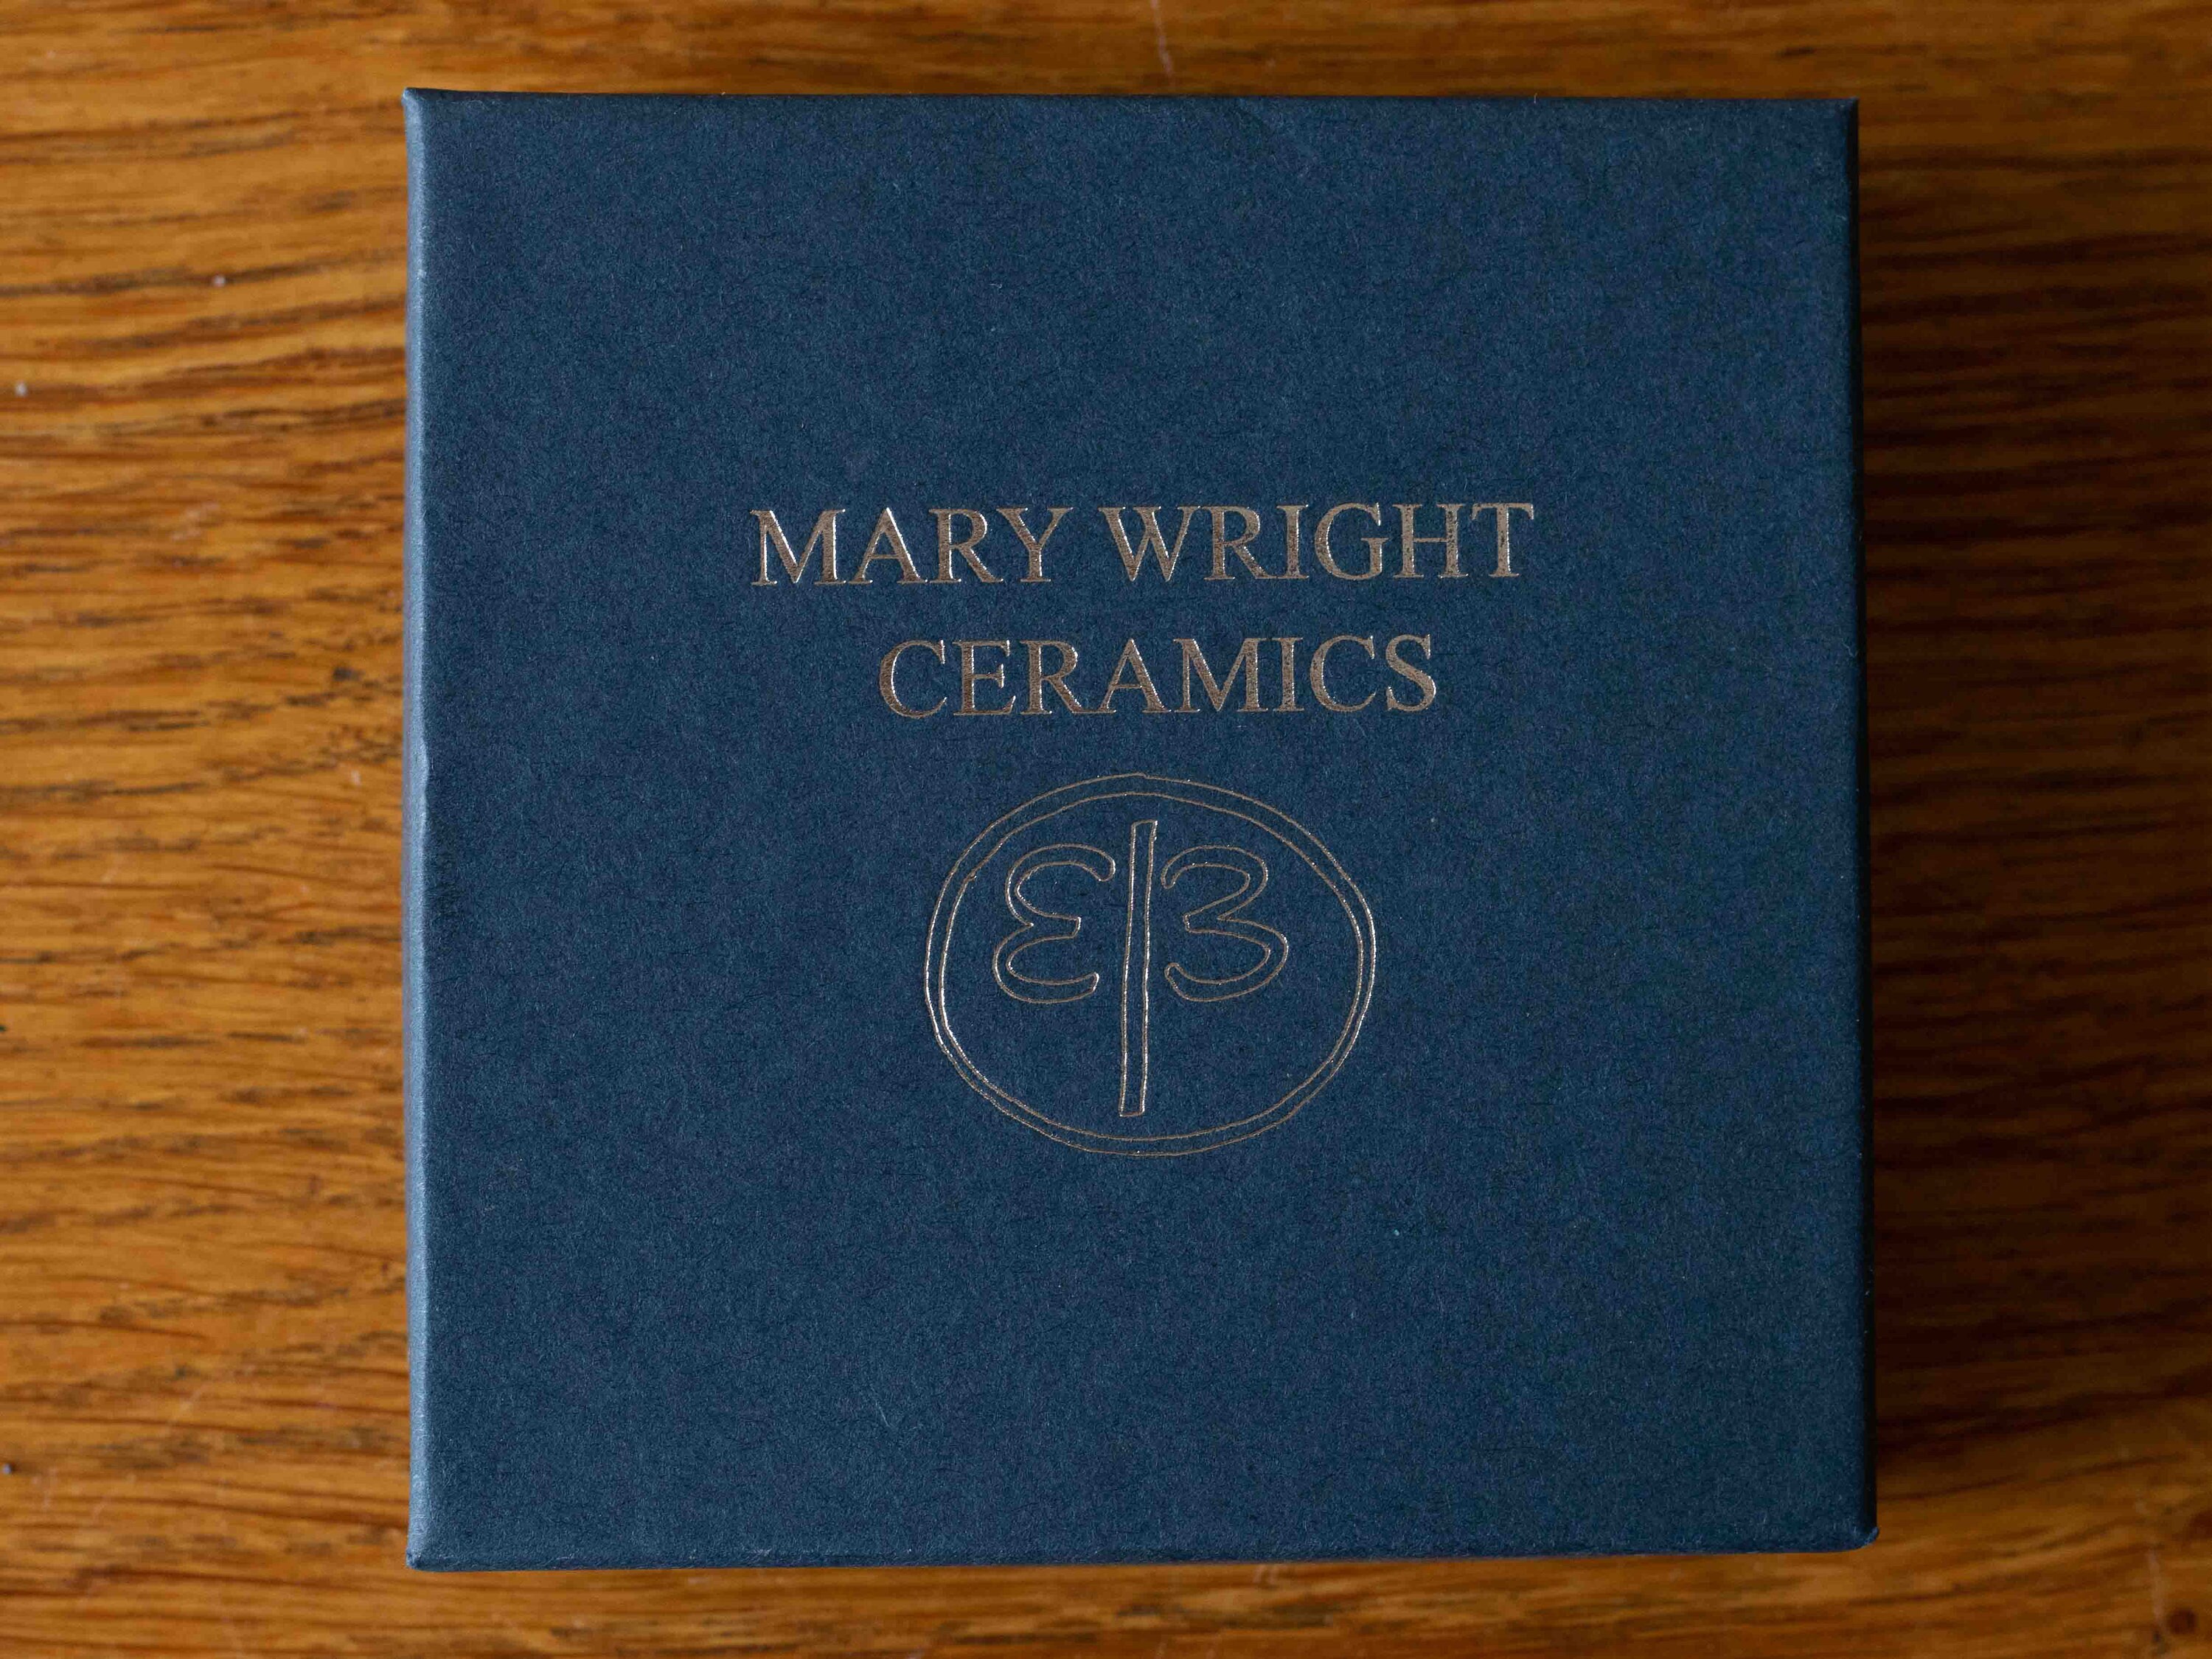 MARY WRIGHT CERAMICS